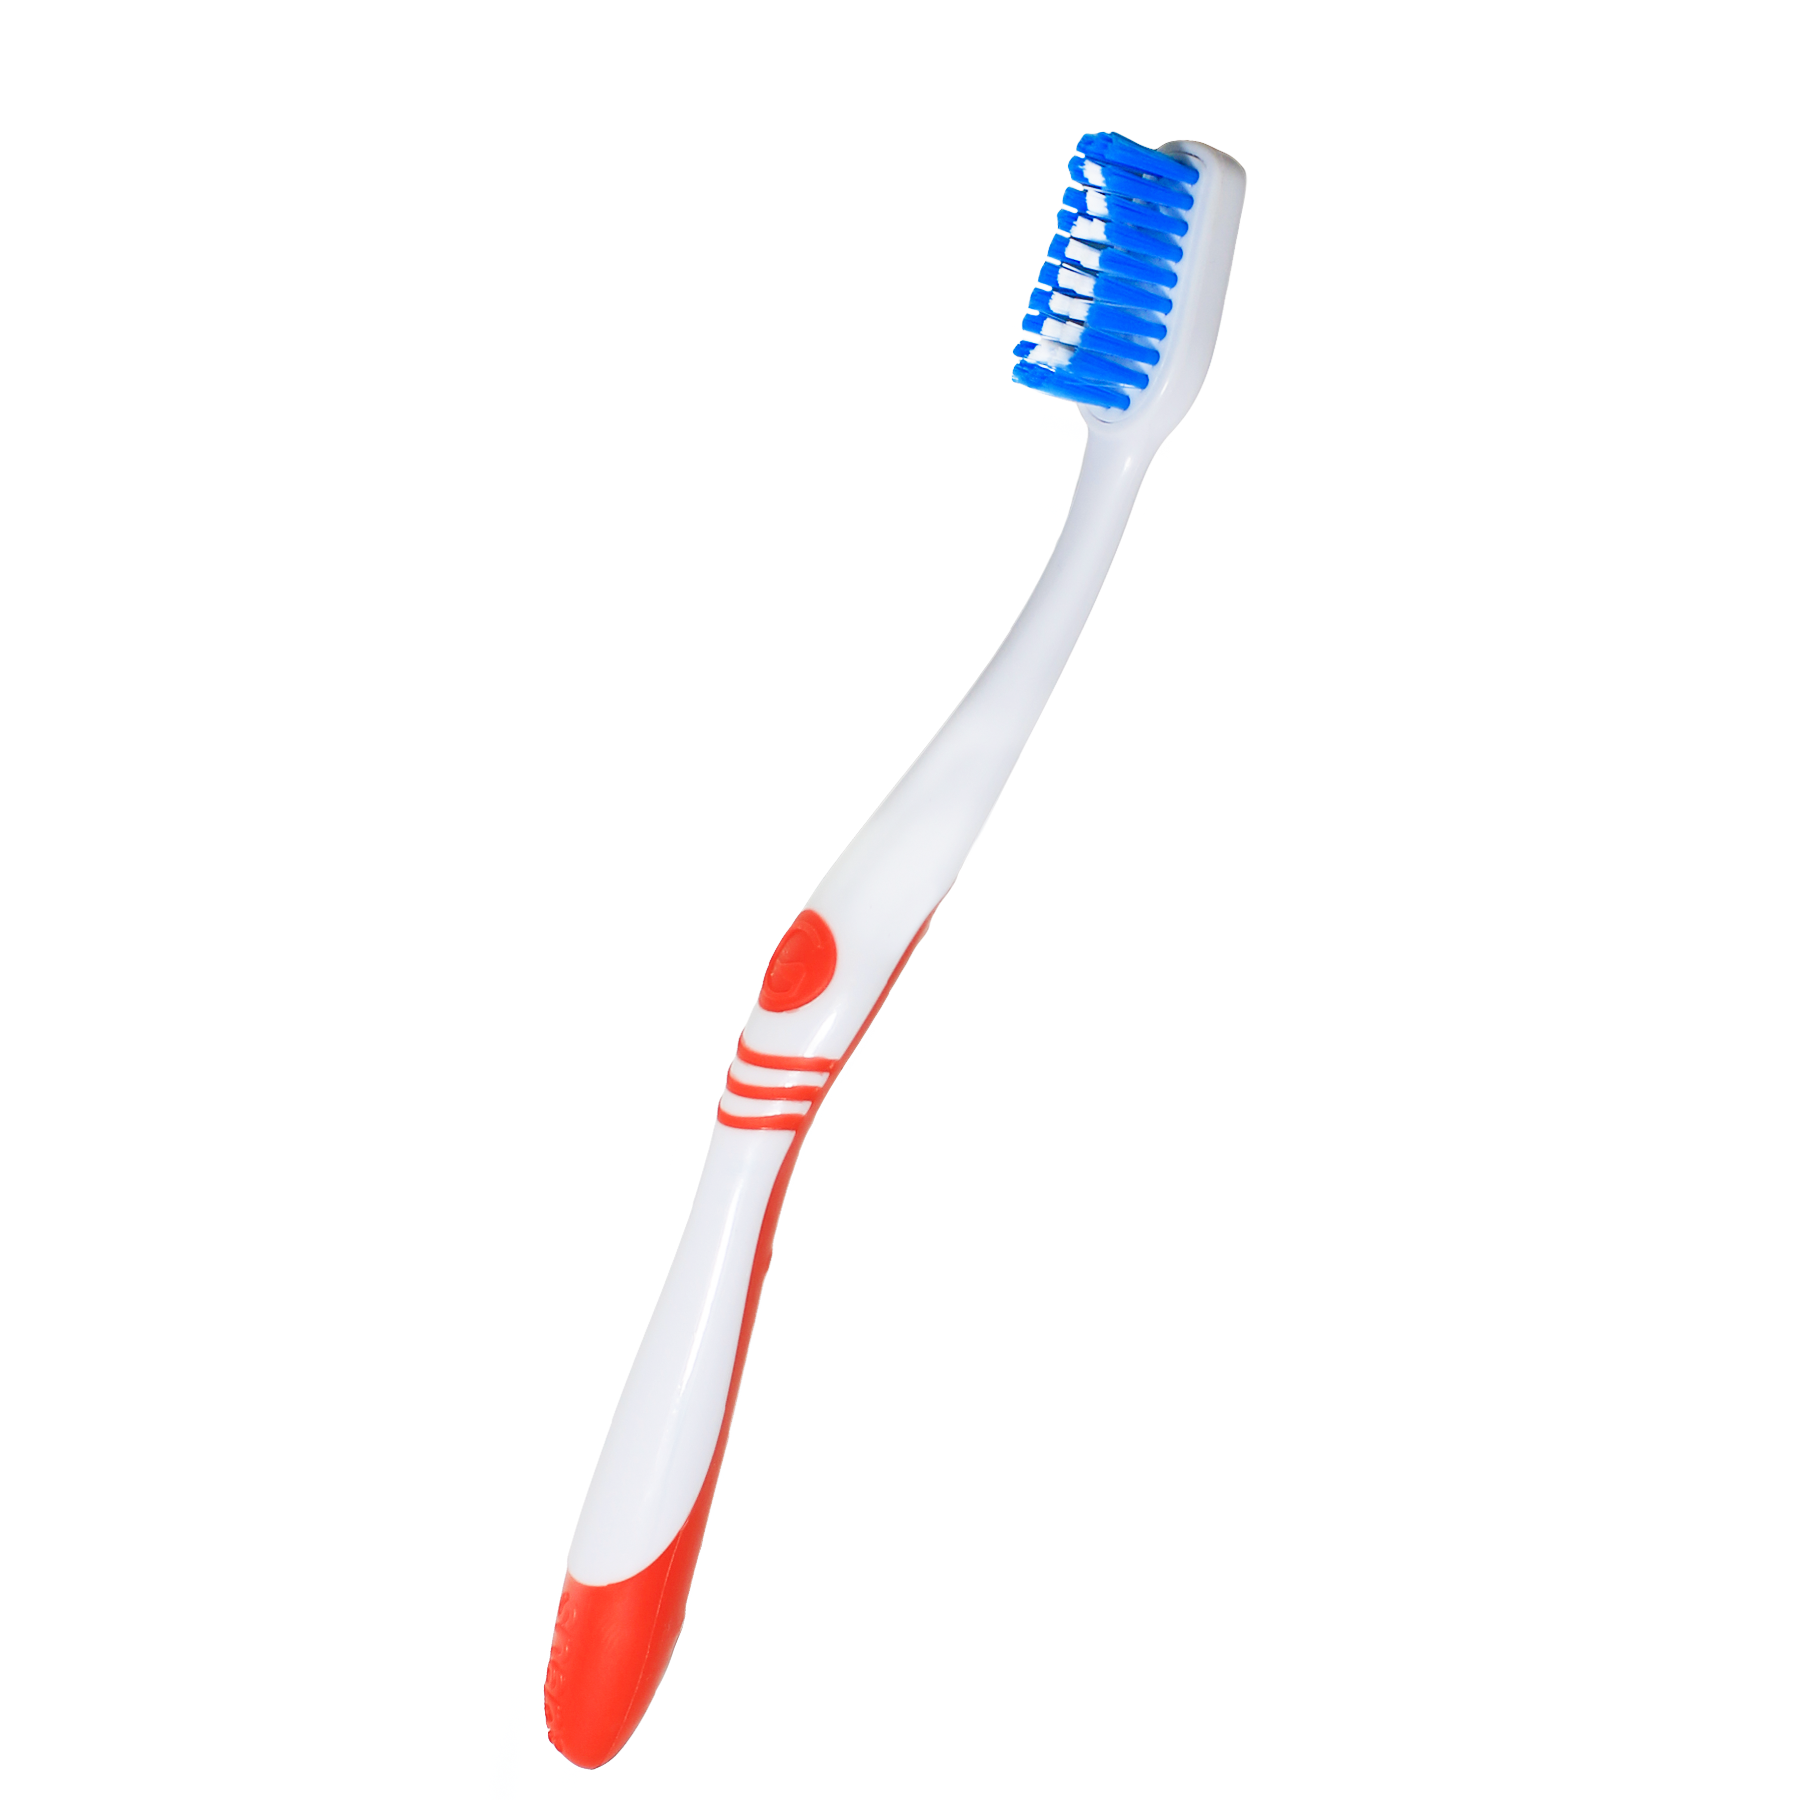 Snap Toothbrush - Snaptoothbrush